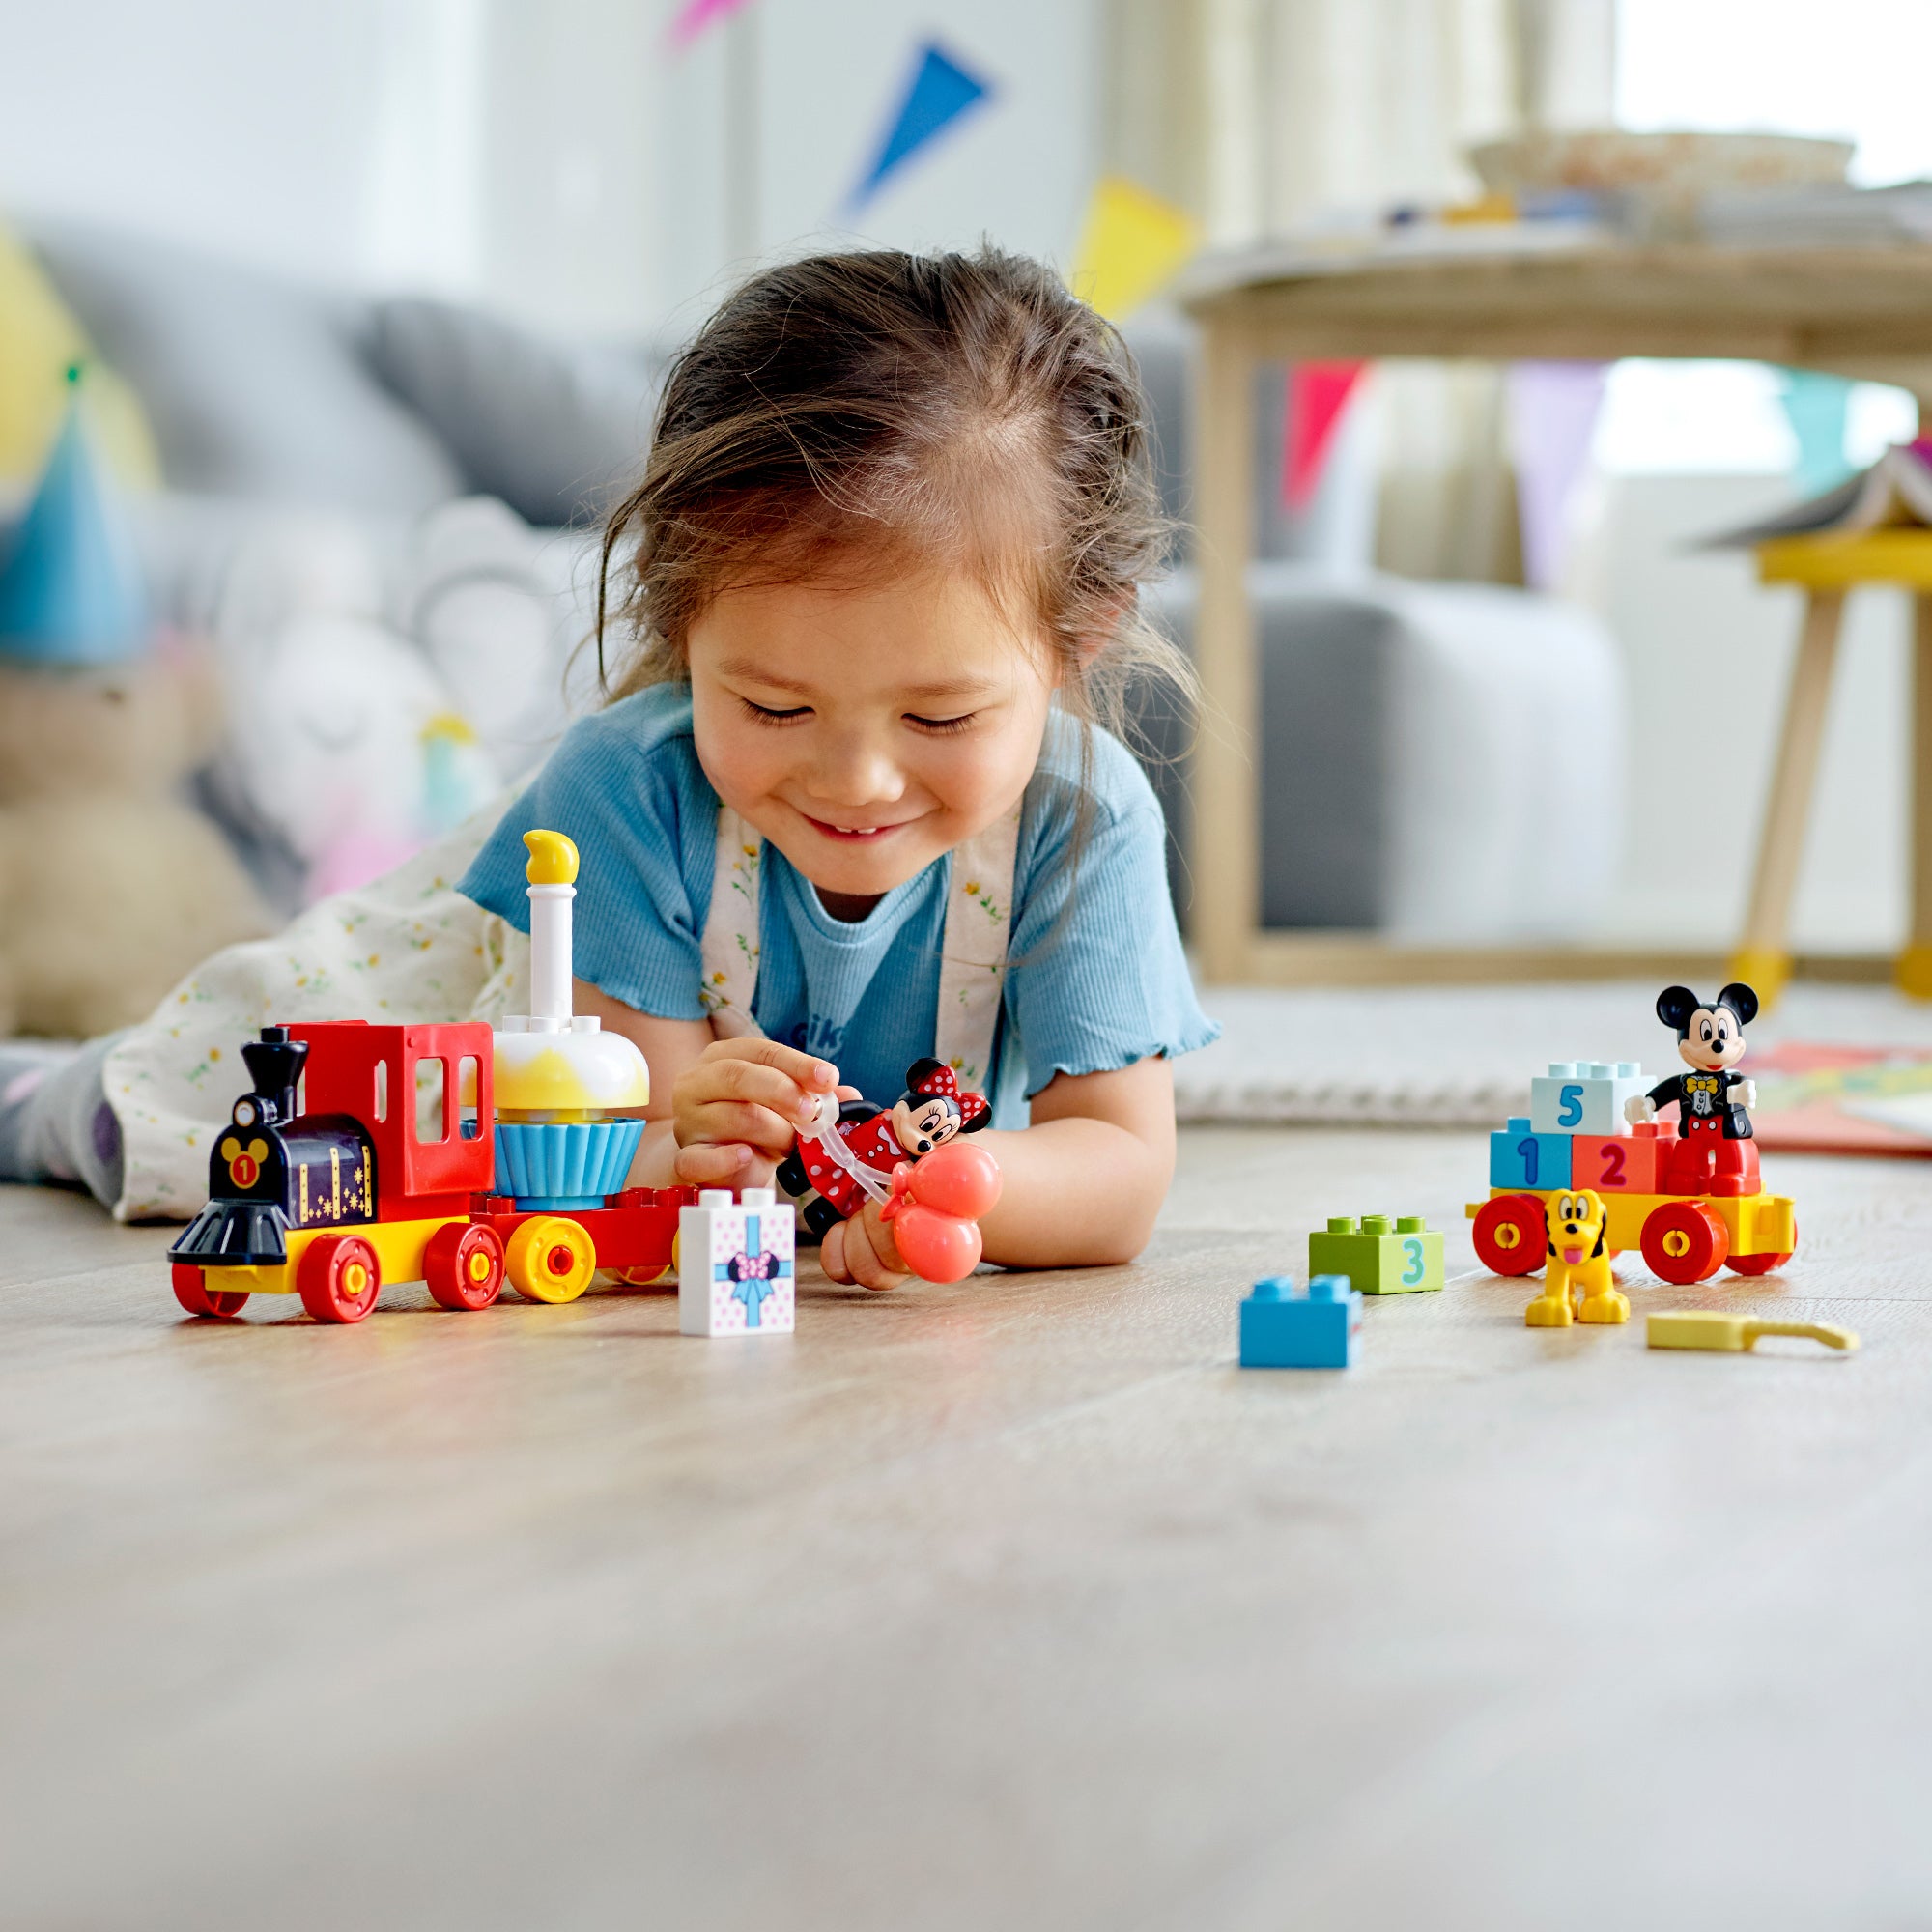 10941 LEGO® Duplo - Il treno del compleanno di Topolino e Minnie – Full Toys